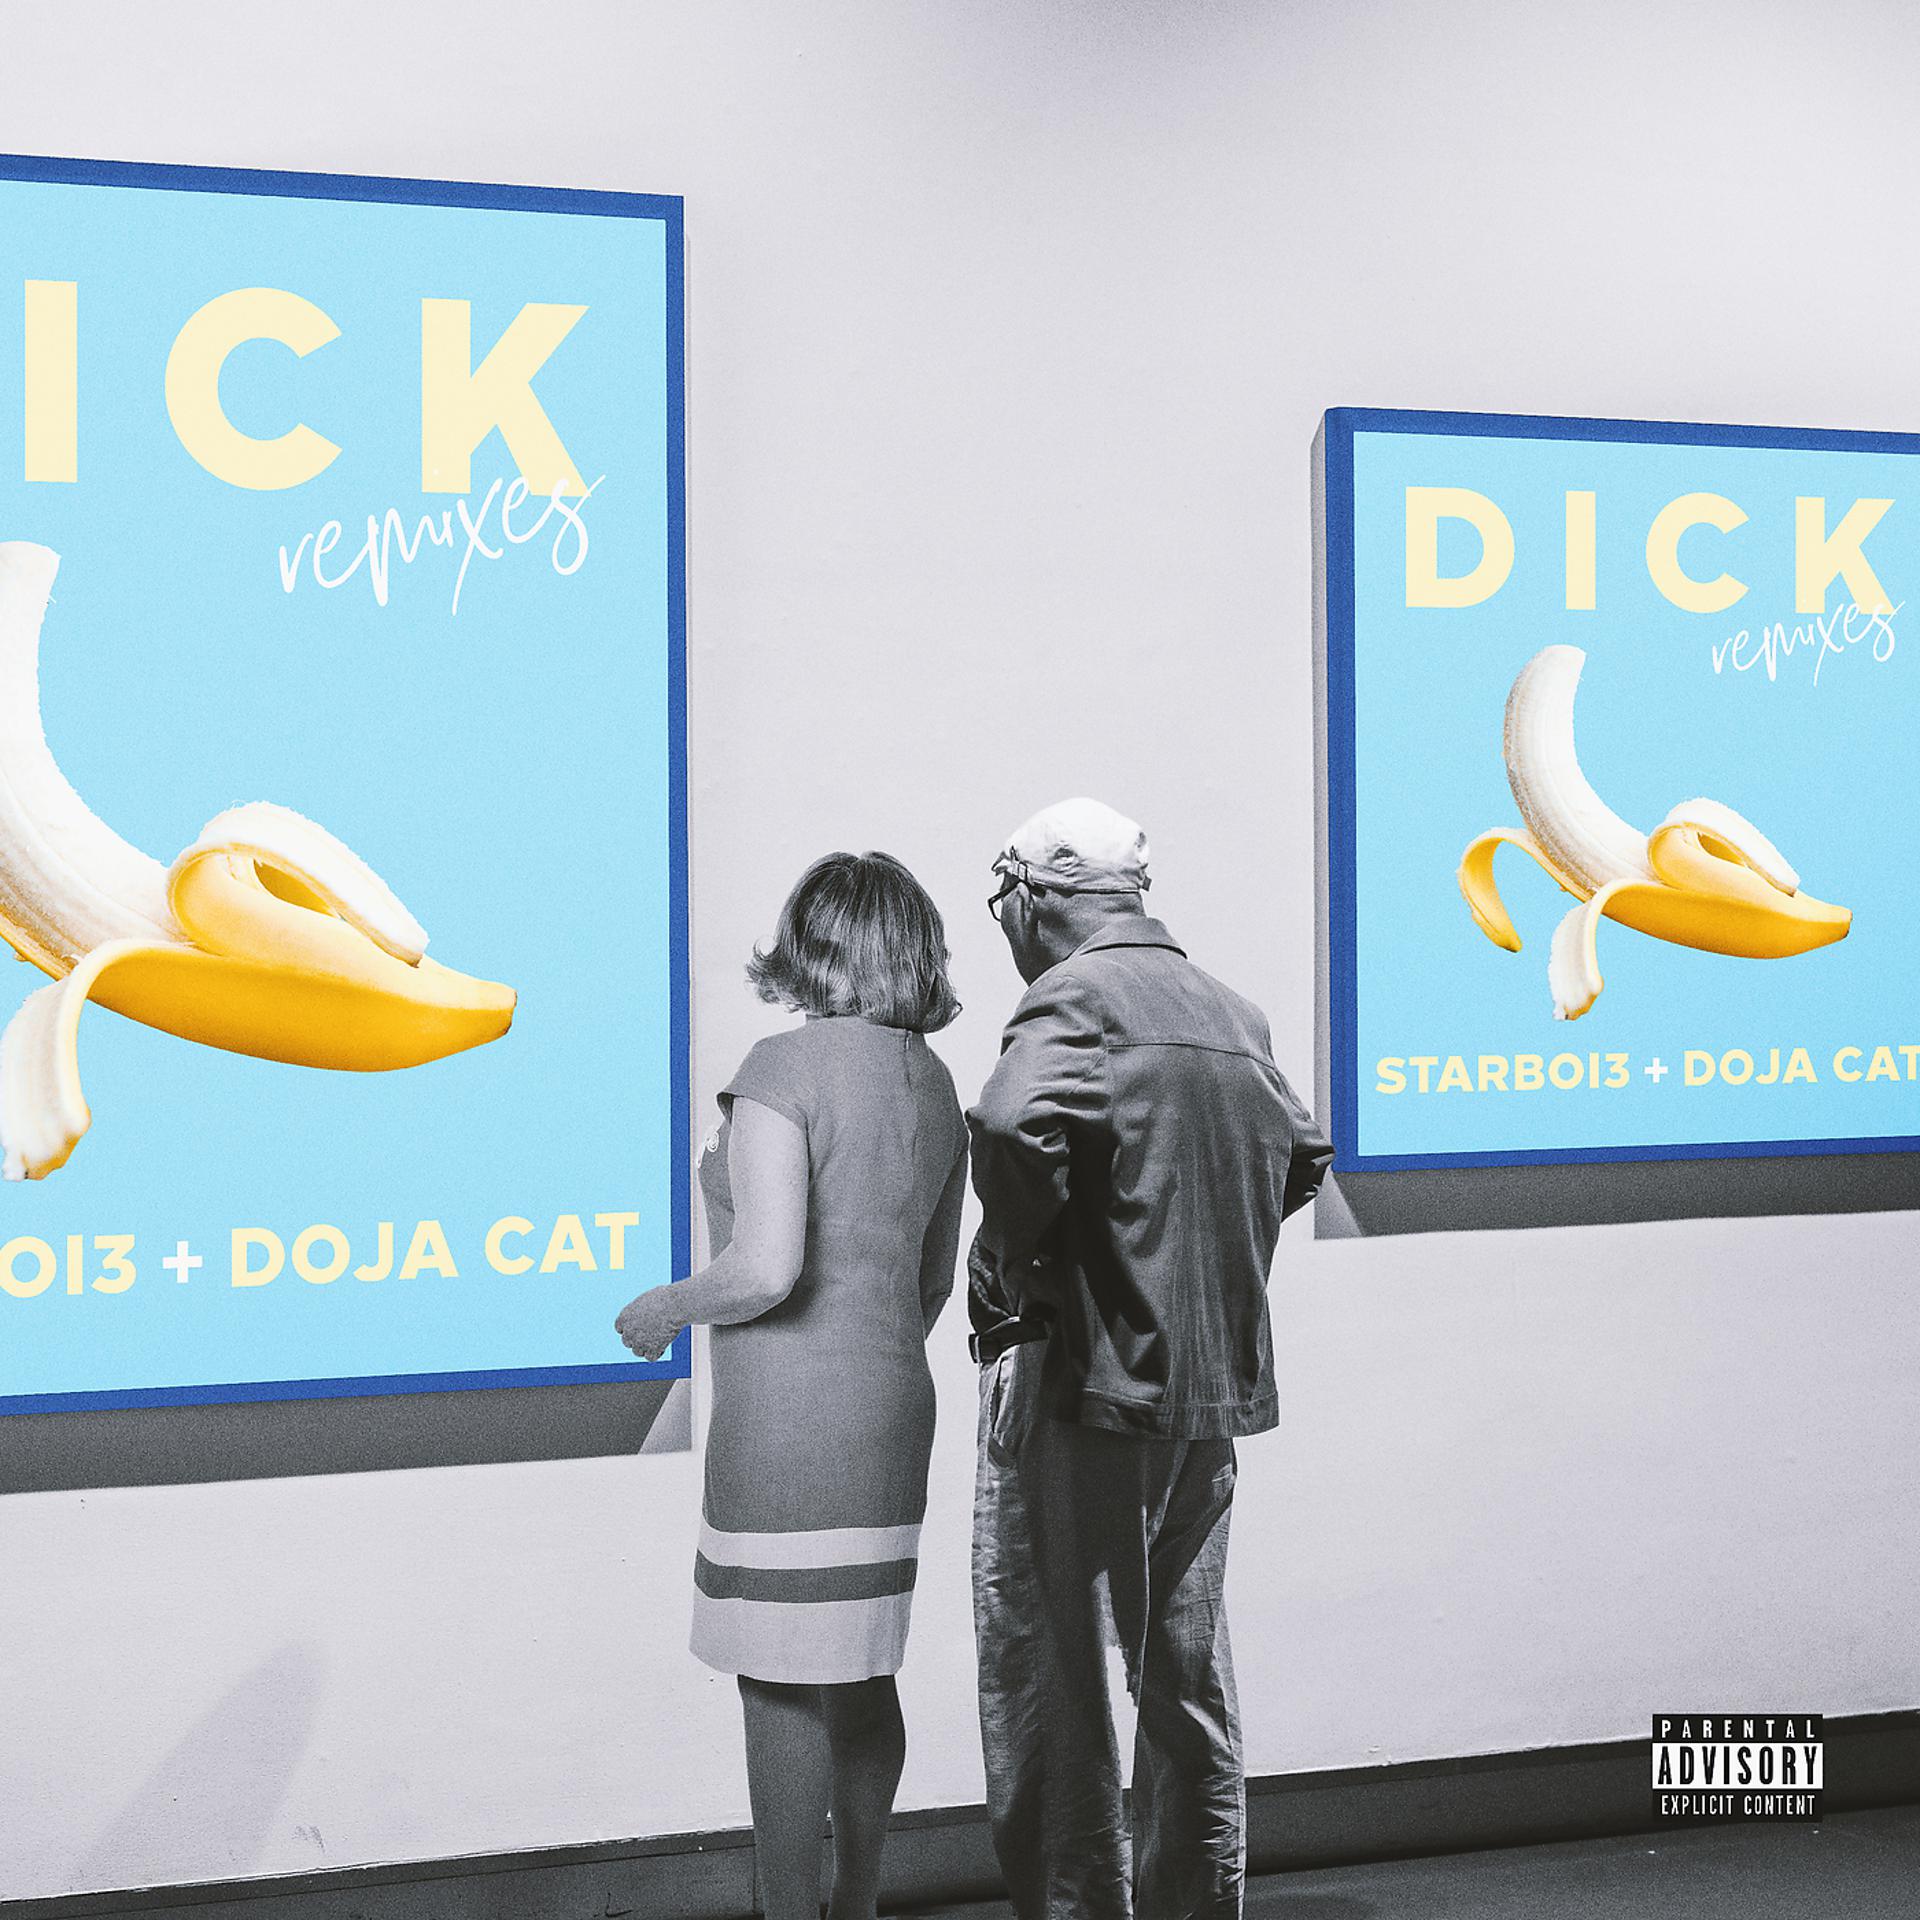 Dick Doja Cat. Dick starboi3, Doja Cat. Starboi3 feat. Doja Cat. Dick feat Doja Cat. Me dick песня